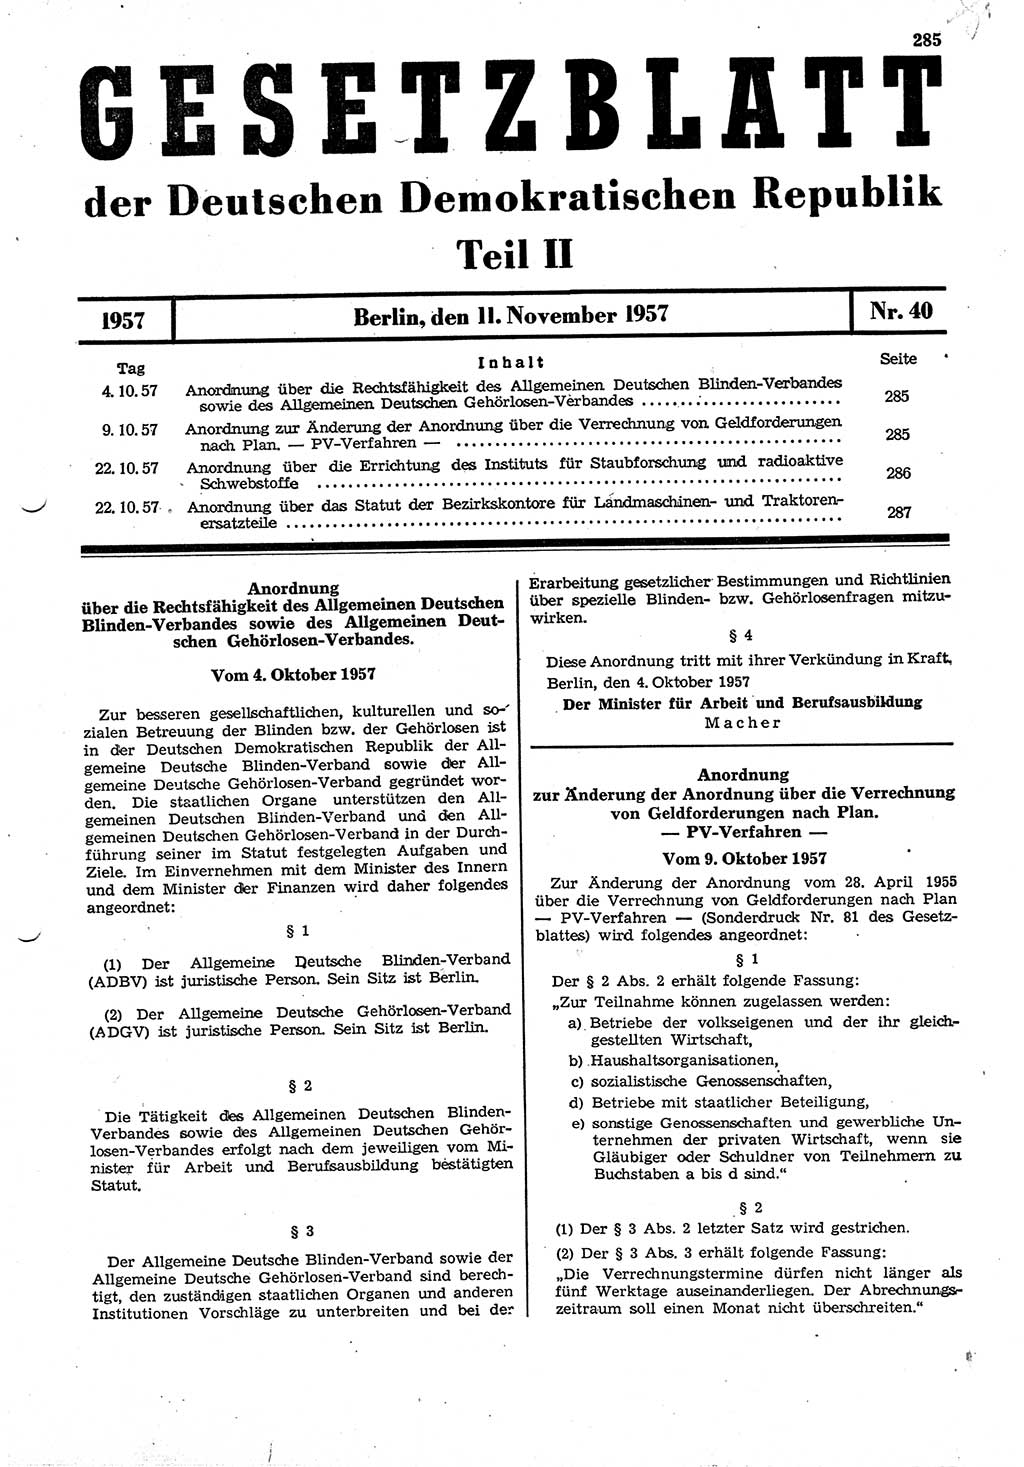 Gesetzblatt (GBl.) der Deutschen Demokratischen Republik (DDR) Teil ⅠⅠ 1957, Seite 285 (GBl. DDR ⅠⅠ 1957, S. 285)